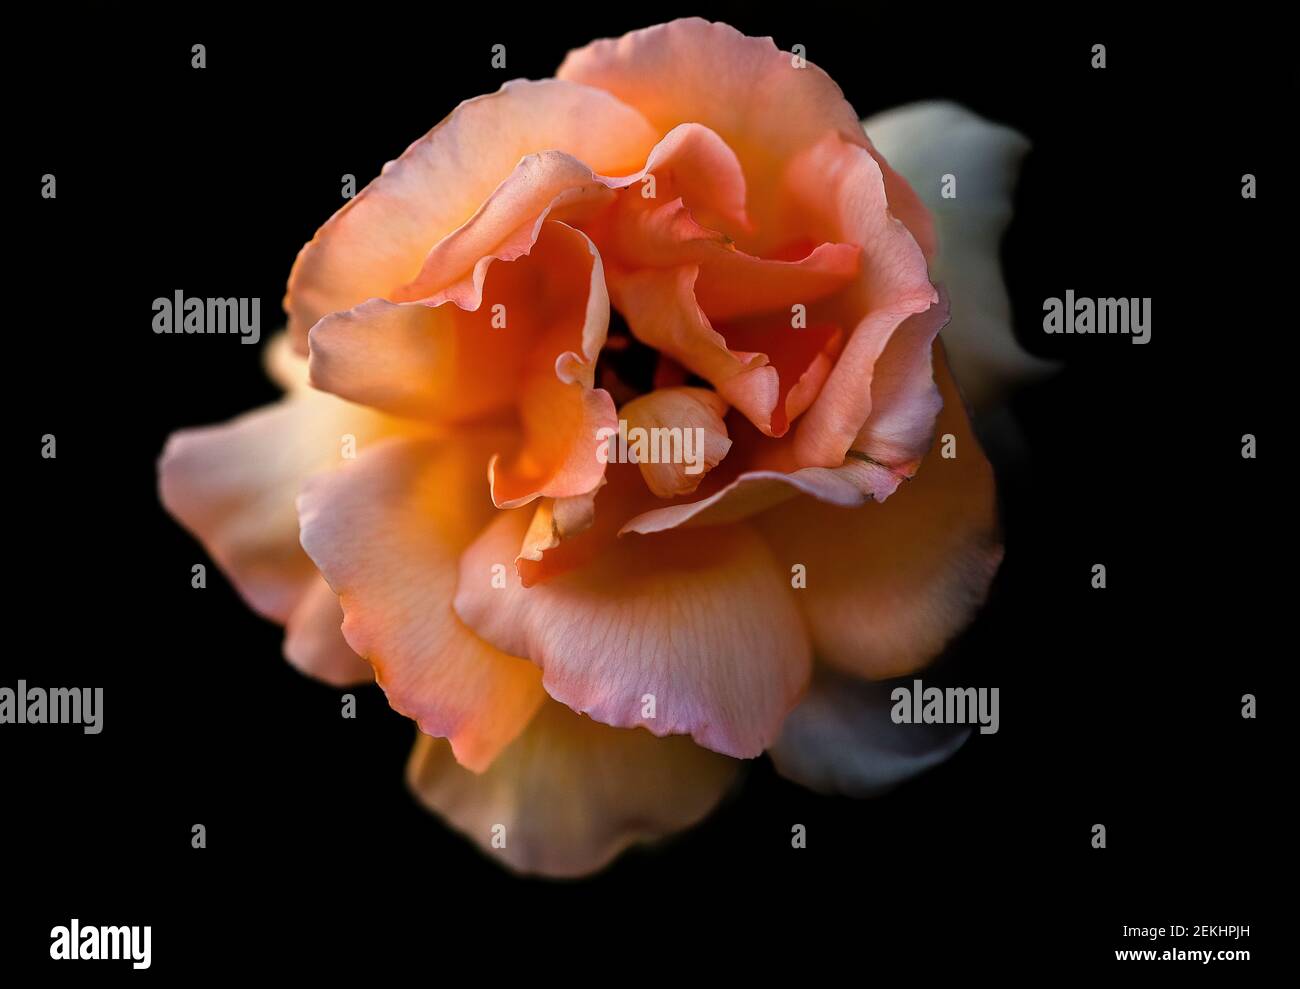 Close-up of orange rose against black background Stock Photo